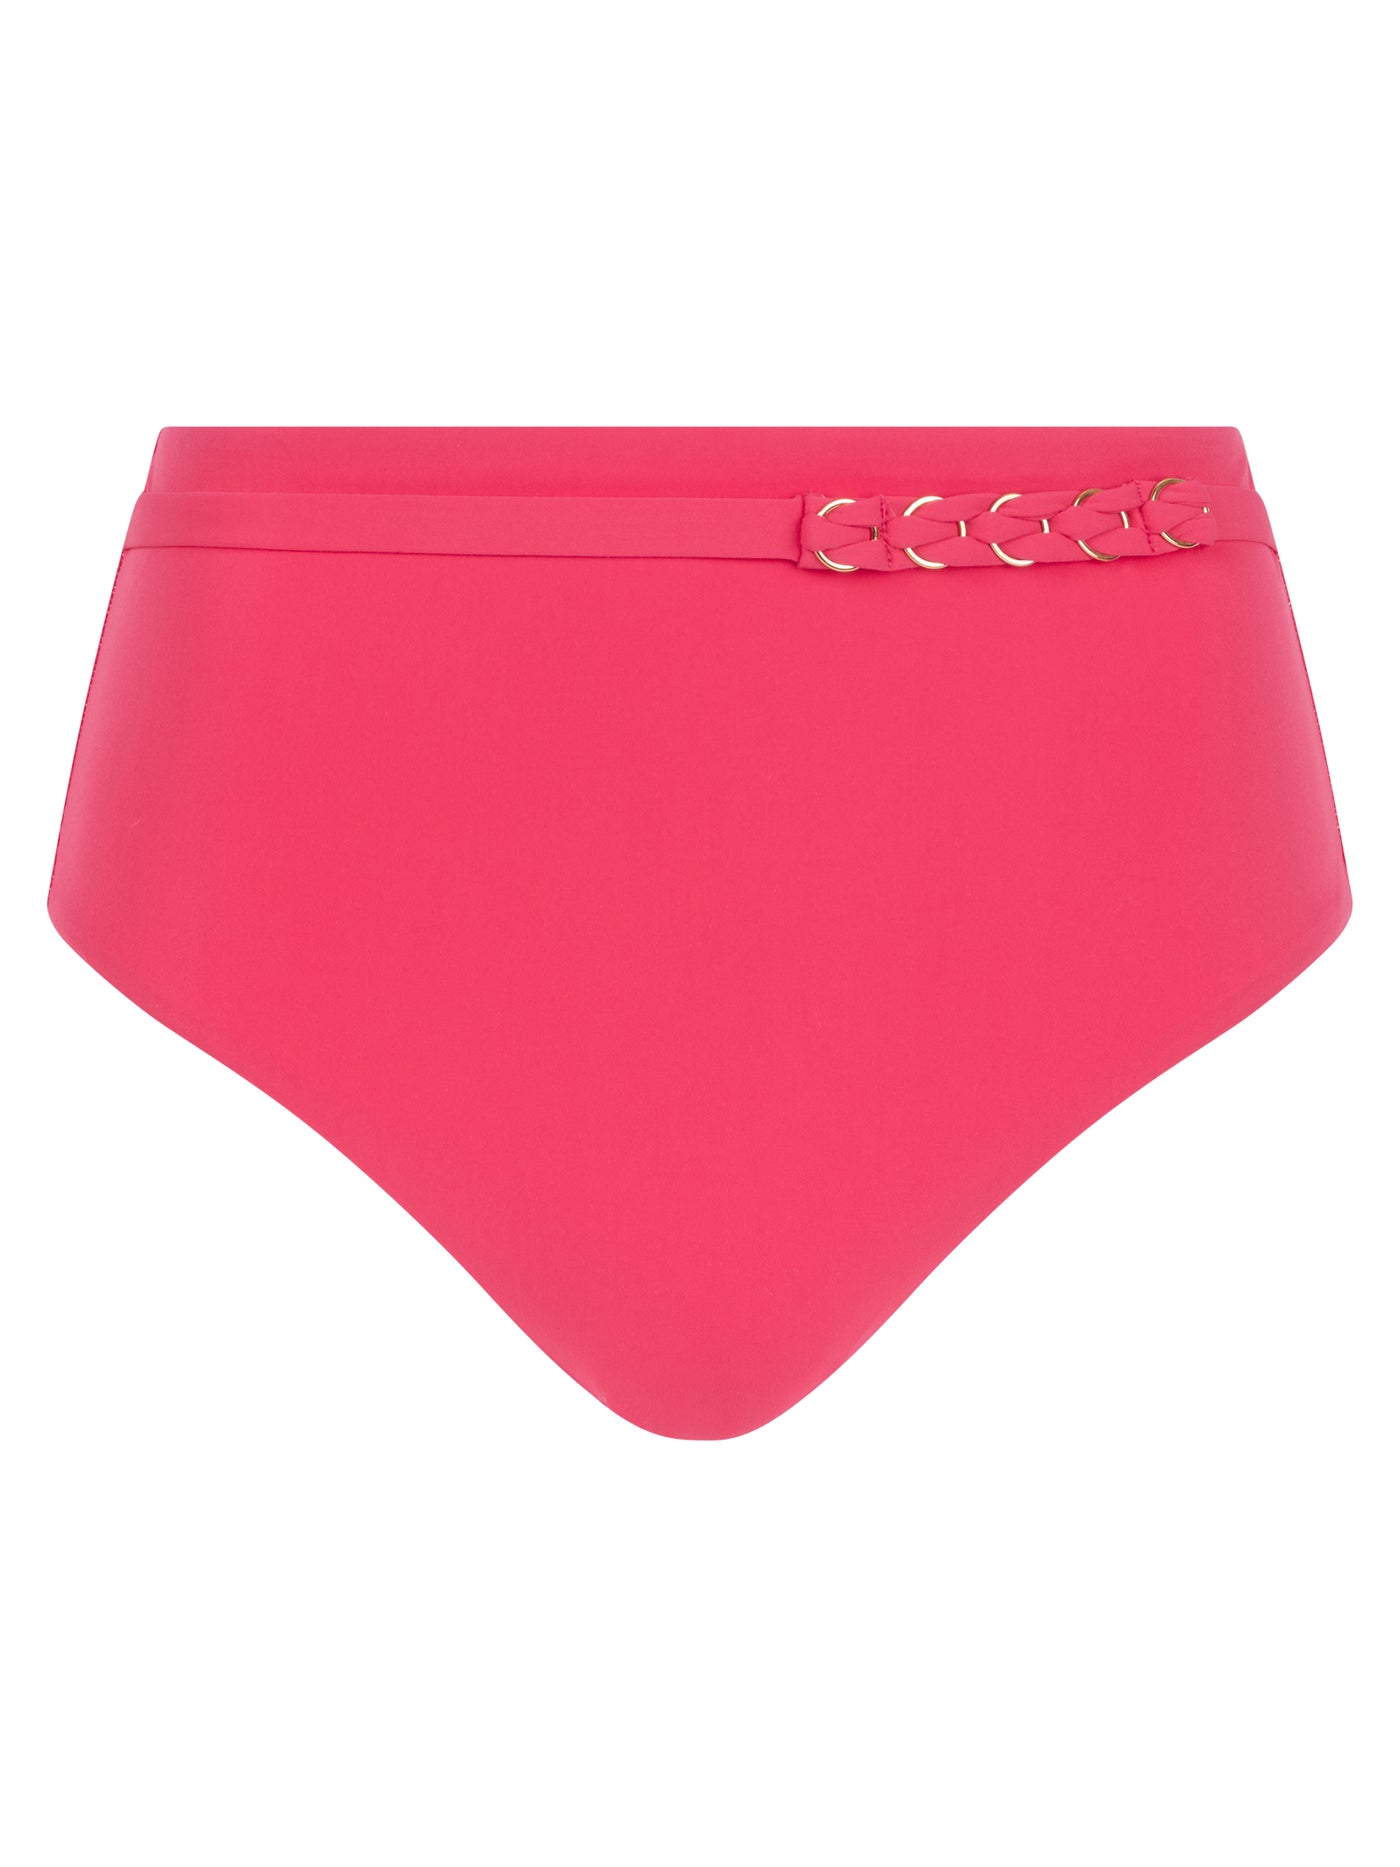 Chantelle Beachwear Emblem high waist bottom Cybele Pink